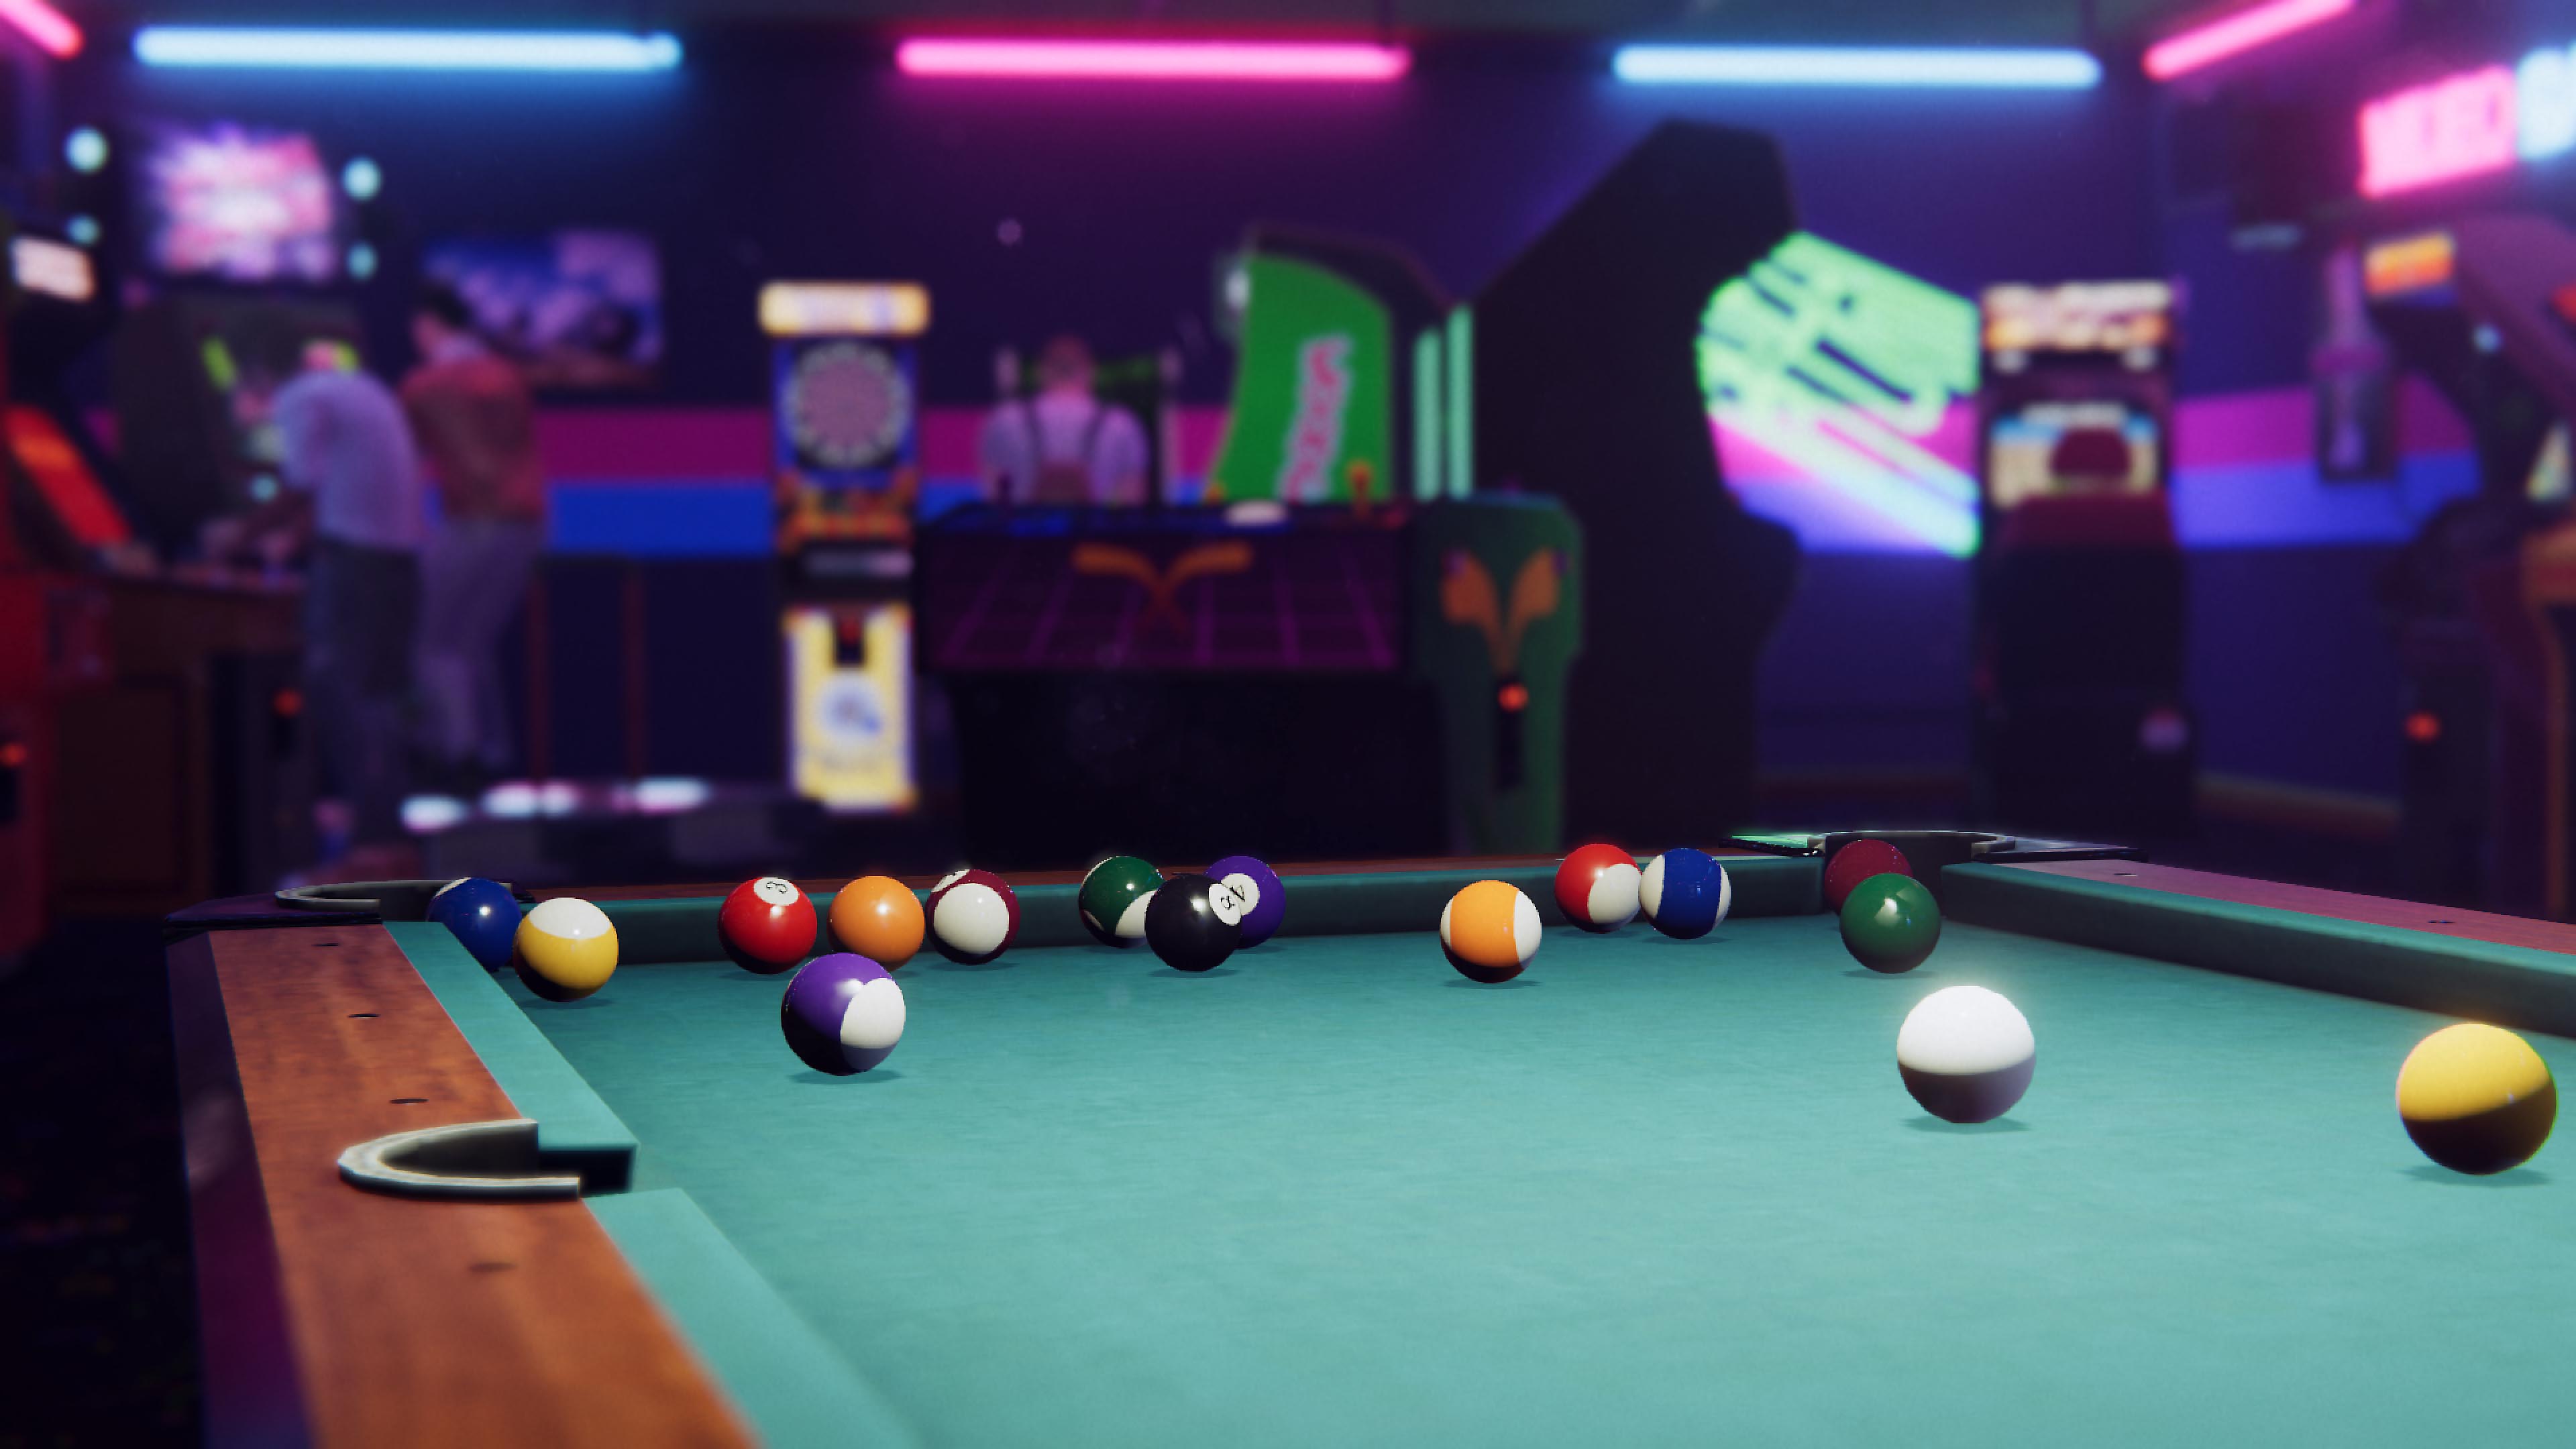 Arcade Paradise-képernyőképe egy biliárdasztallal